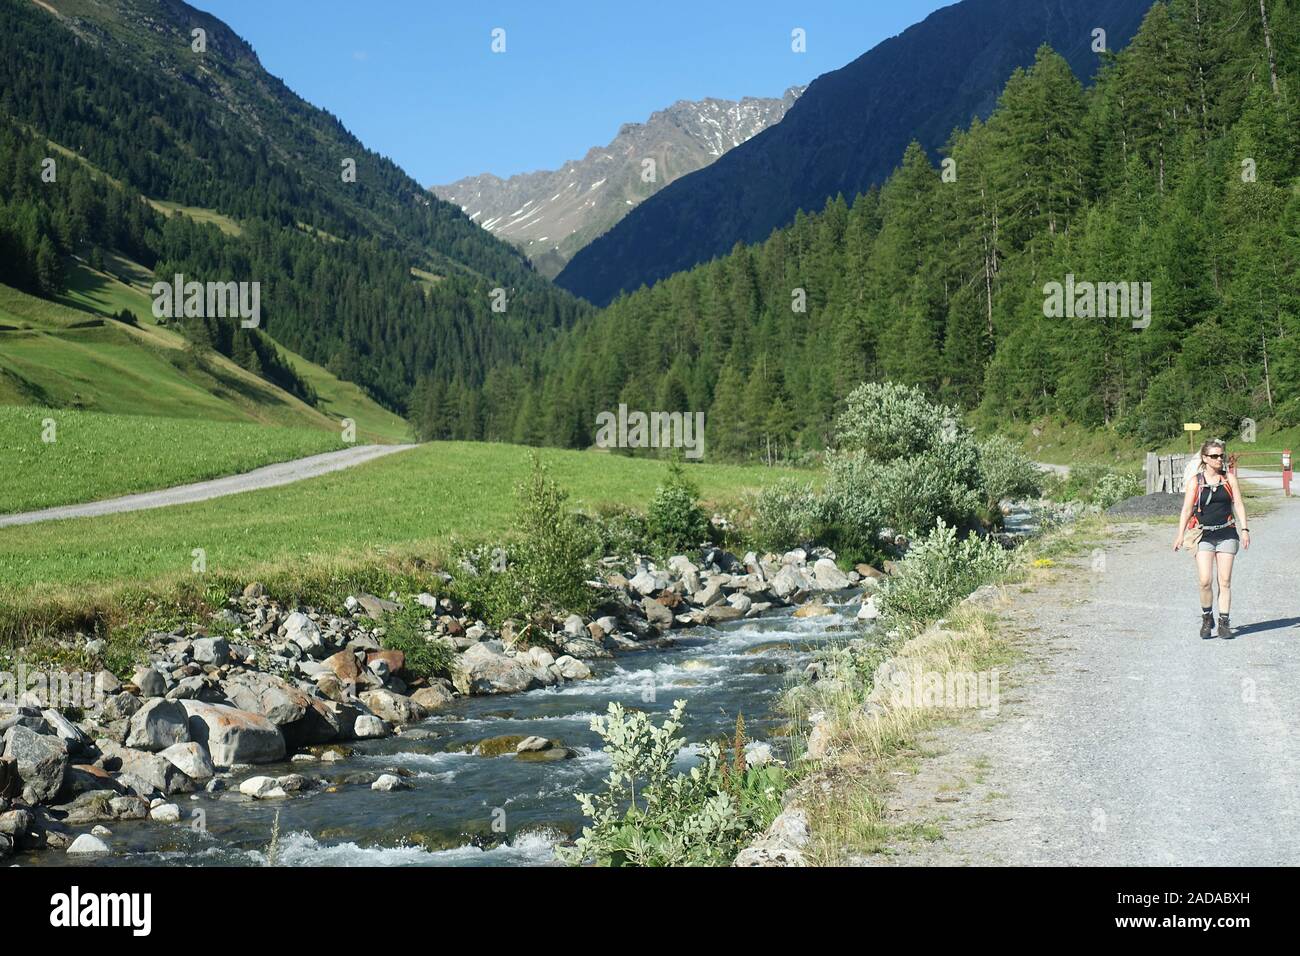 Sentier de randonnée le long du magnifique ruisseau de montagne près de Niederthai, Ötztal, Autriche Banque D'Images